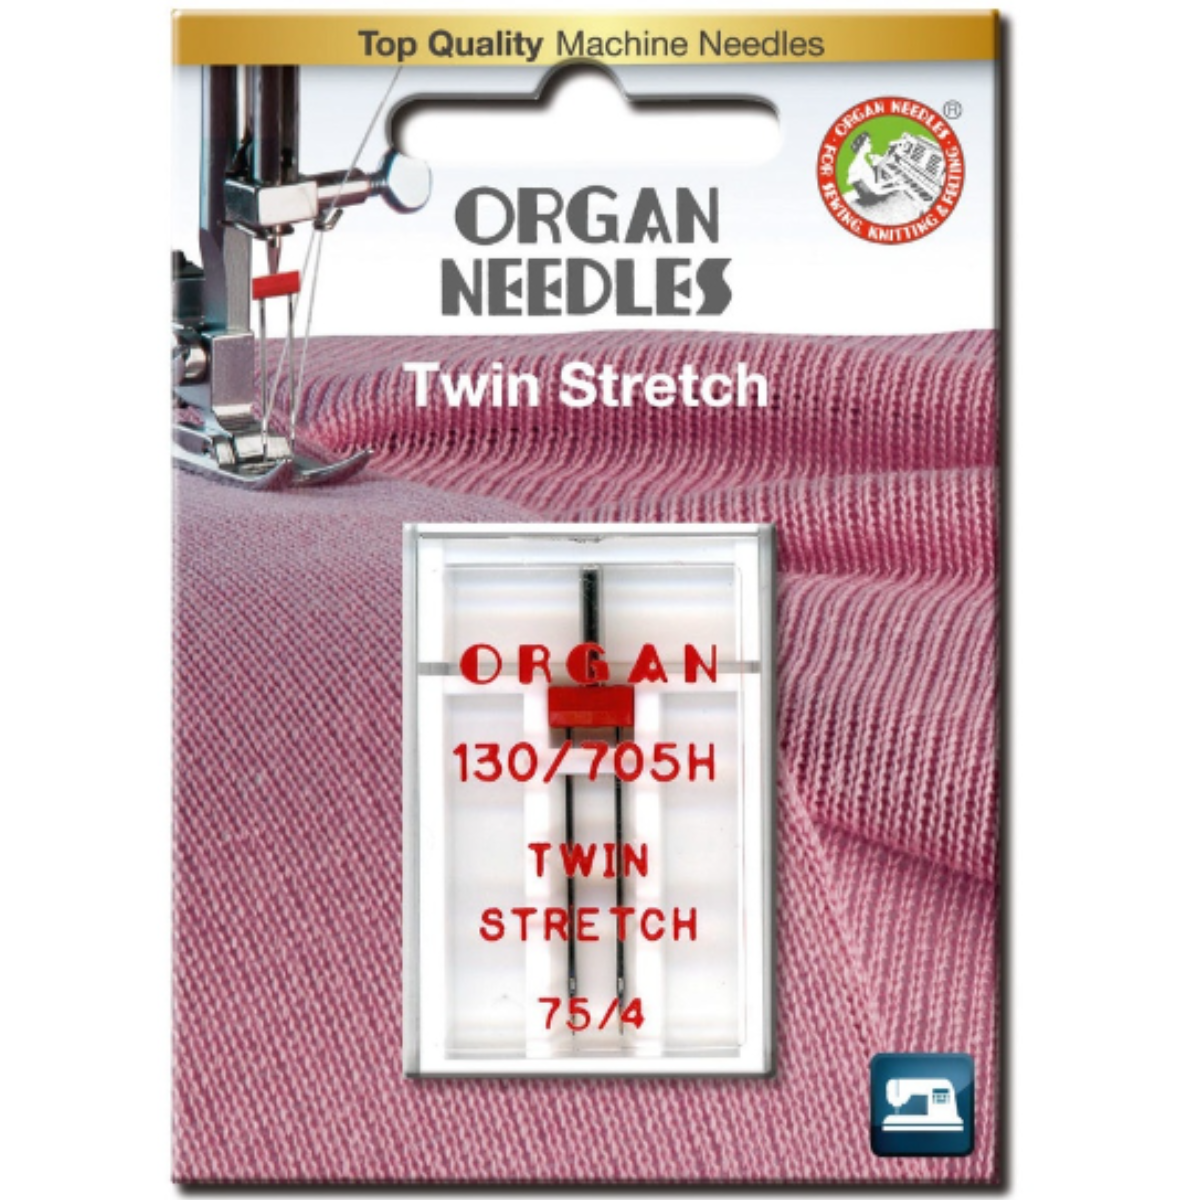 Ompelukoneneula Twin Stretch Organ, useita vaihtoehtoja